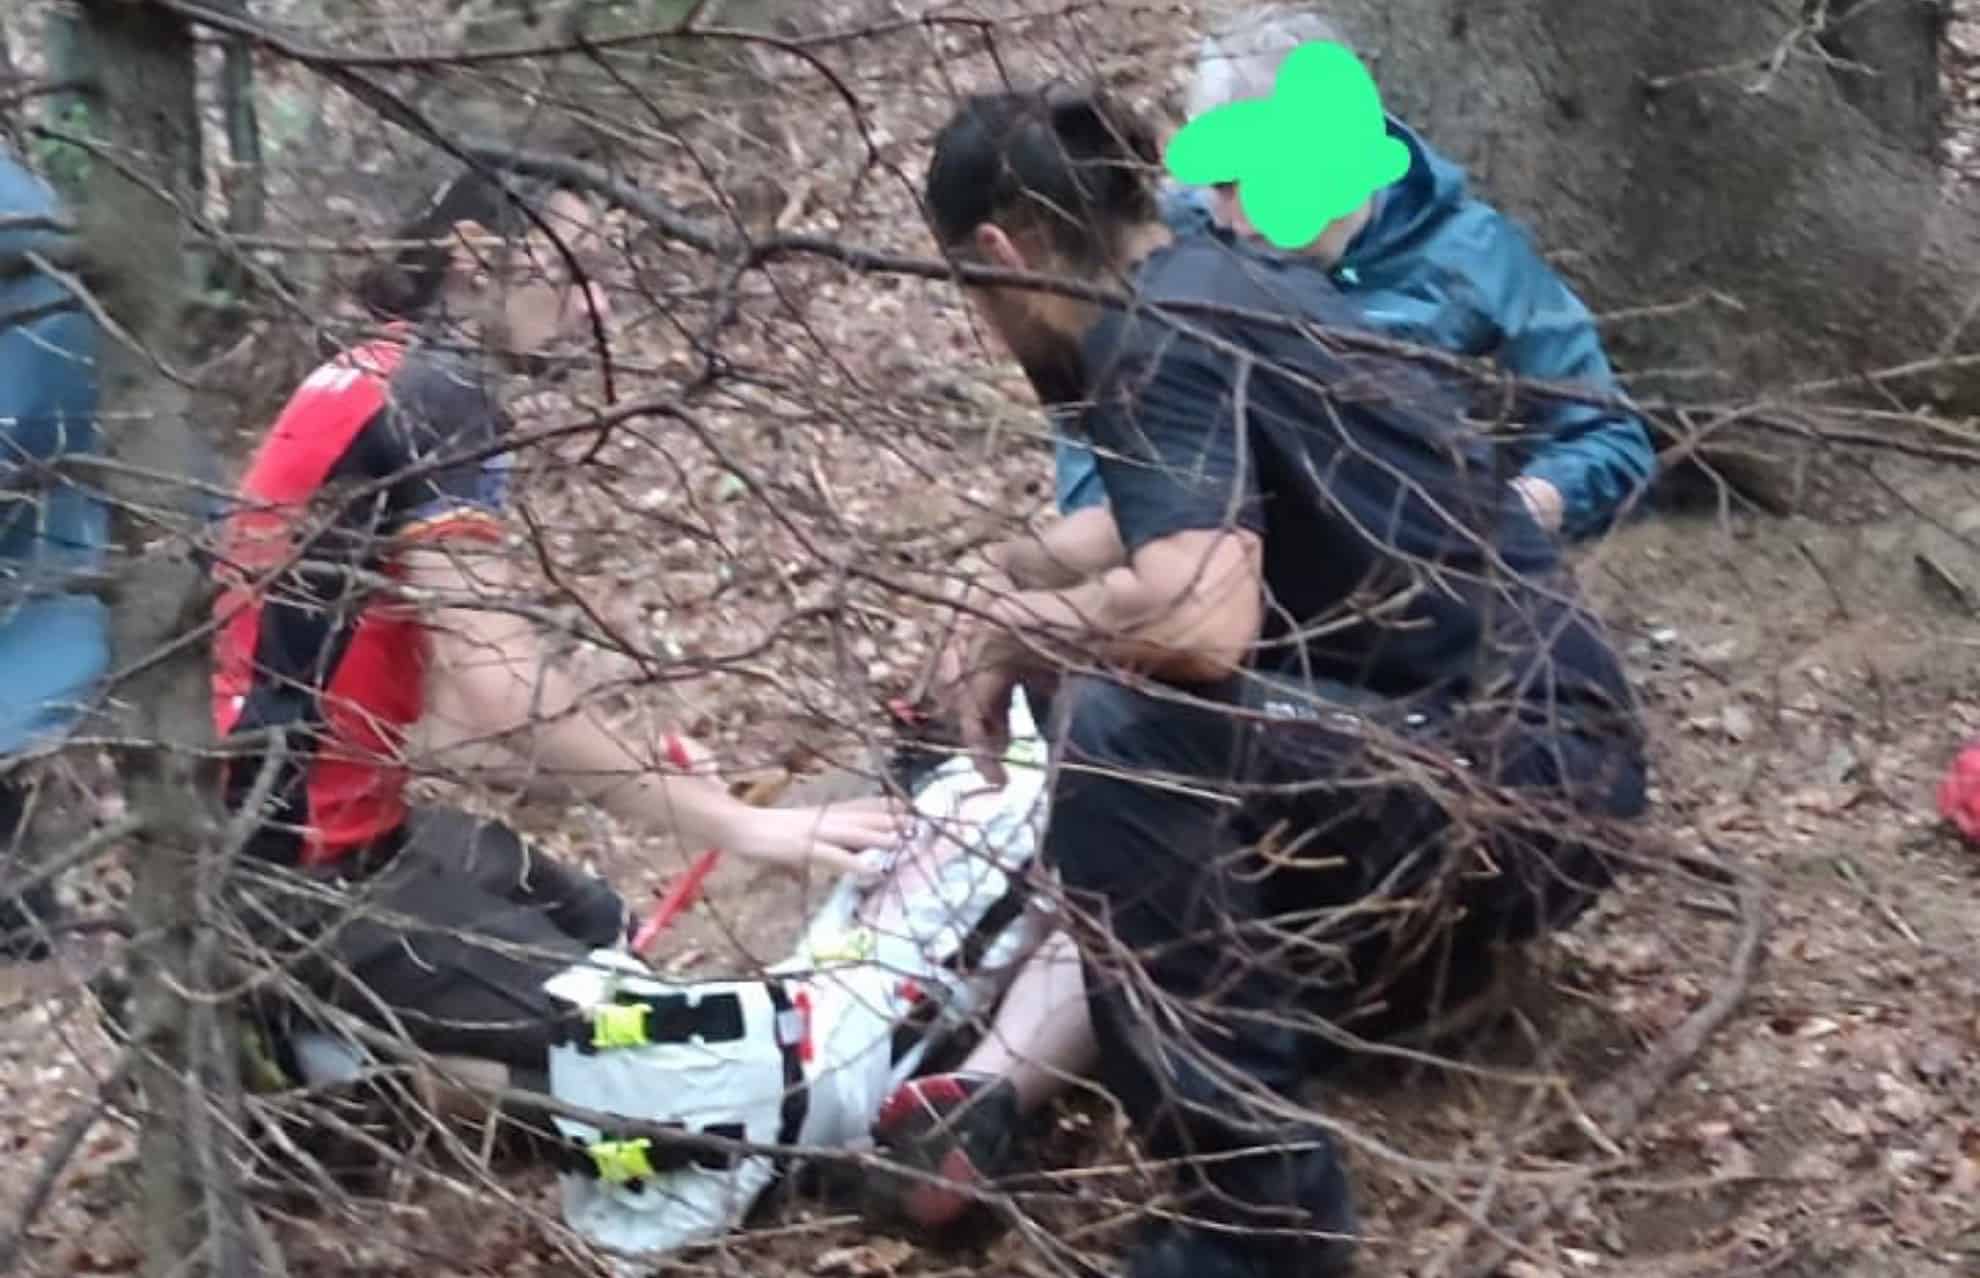 turist echipat neadecvat, rănit în munții făgăraș (foto)